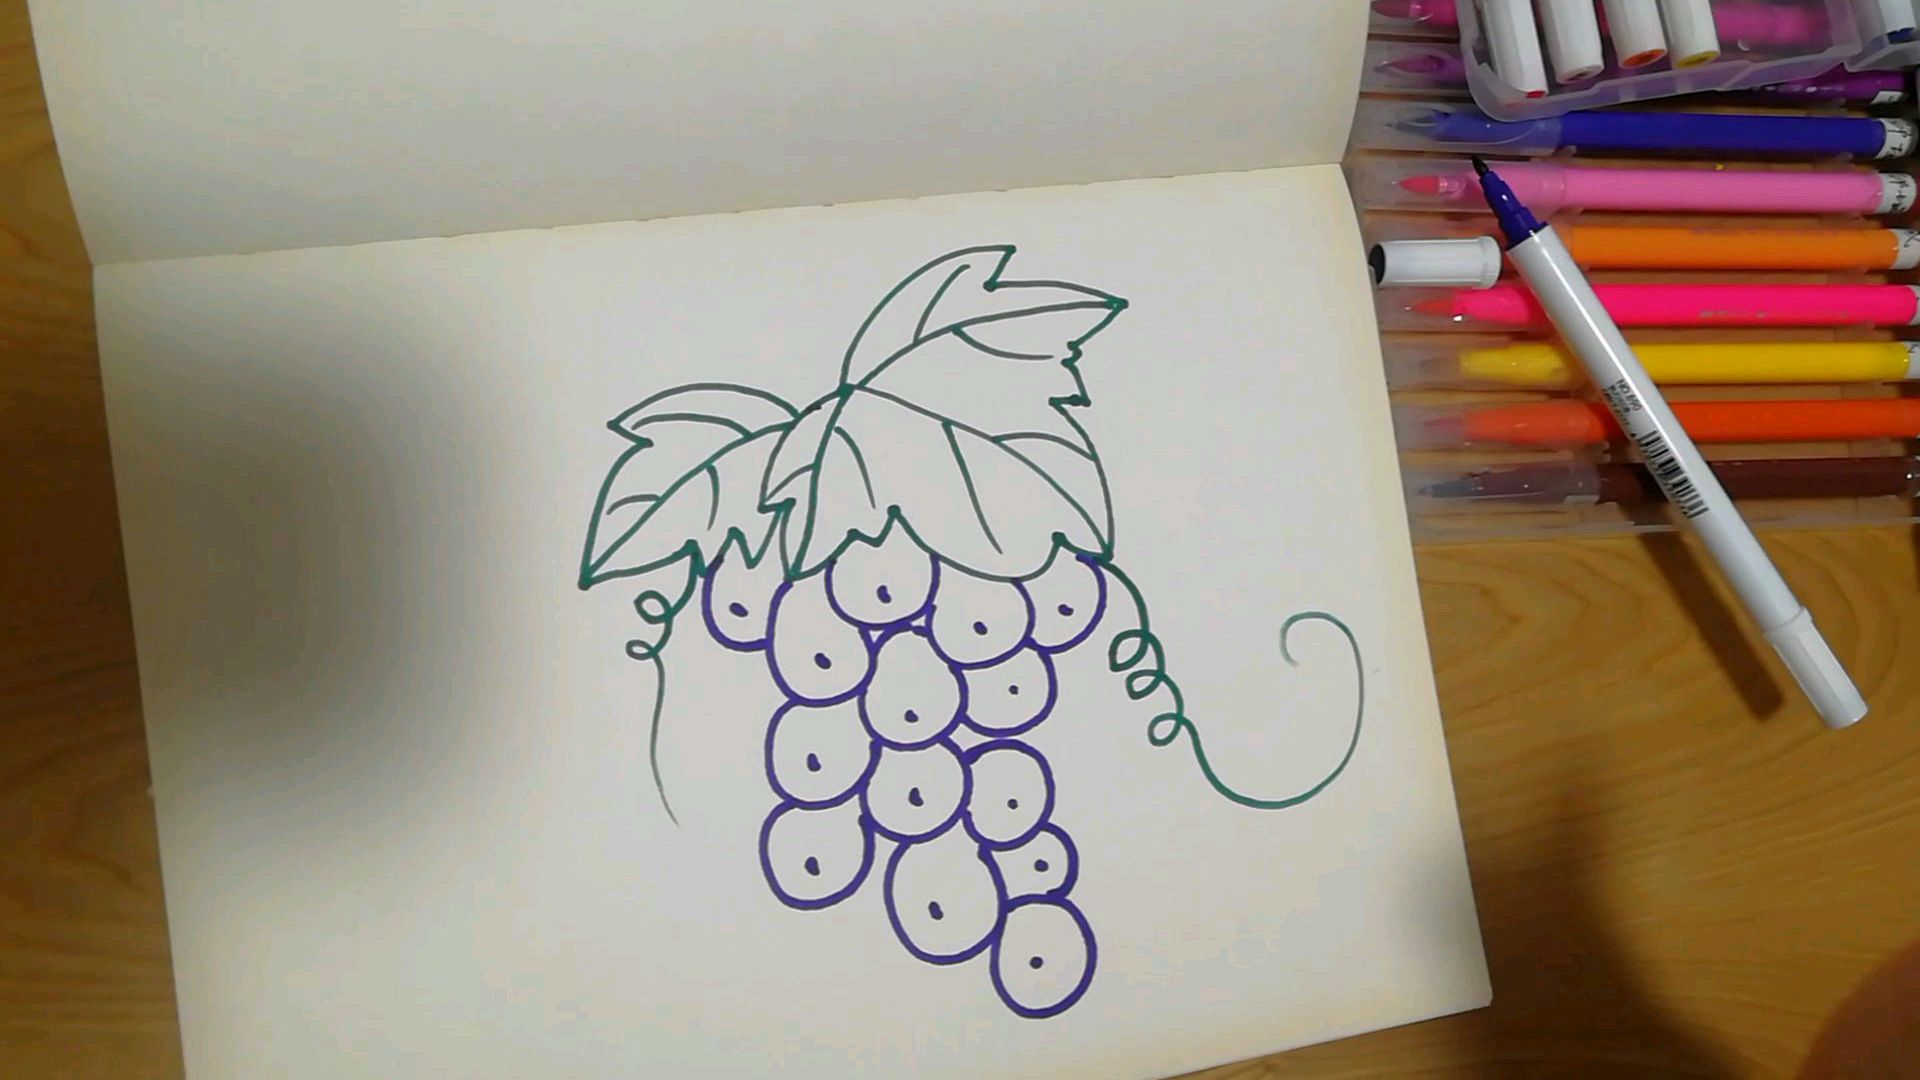 4漂亮好看的葡萄画法  04:02  来源:好看视频-简易画教你怎么画葡萄